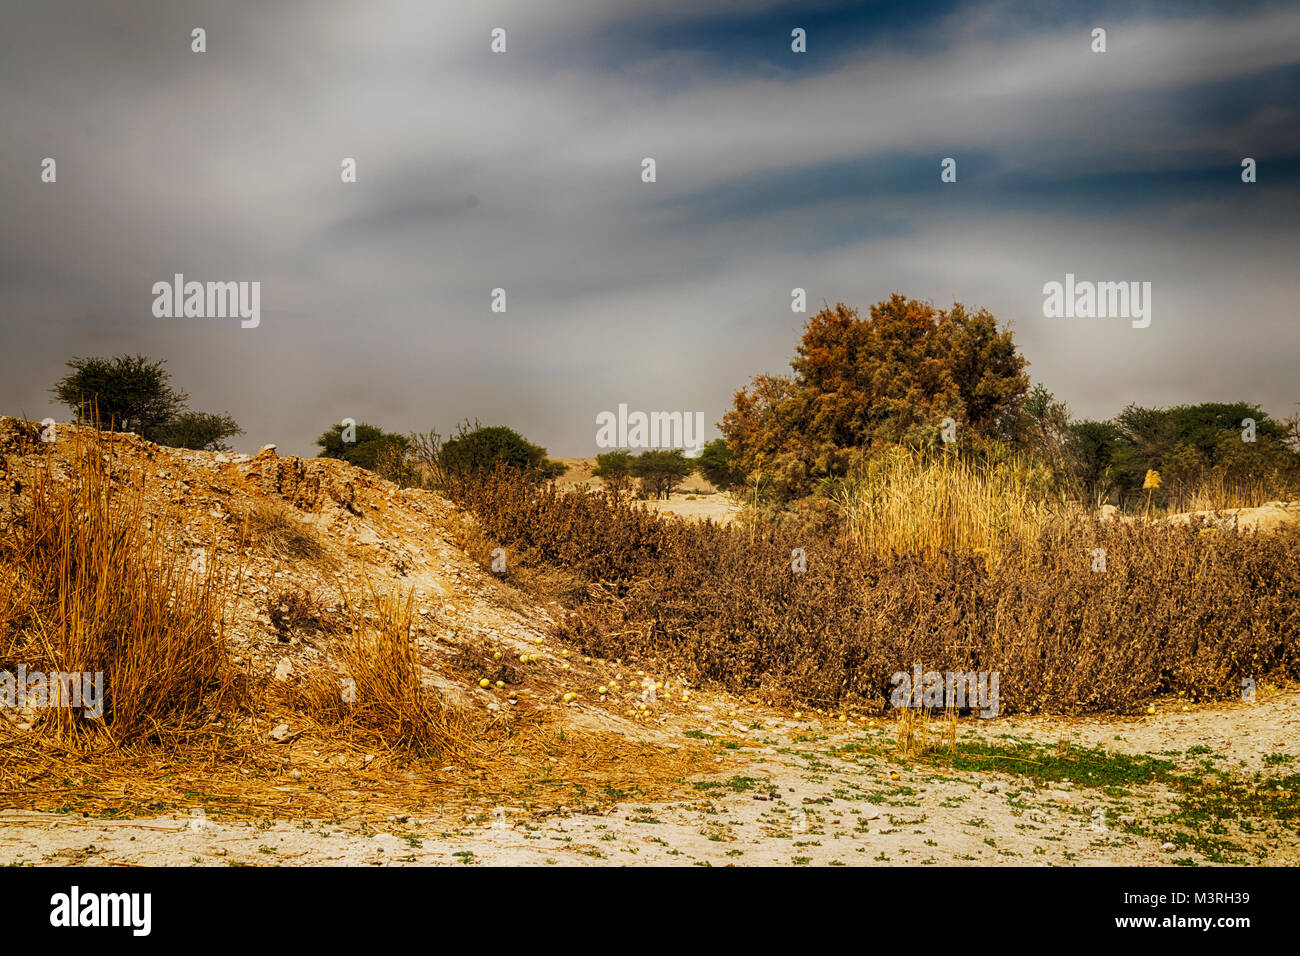 Il paesaggio del deserto con piante d'oro e cielo molto nuvoloso Foto Stock